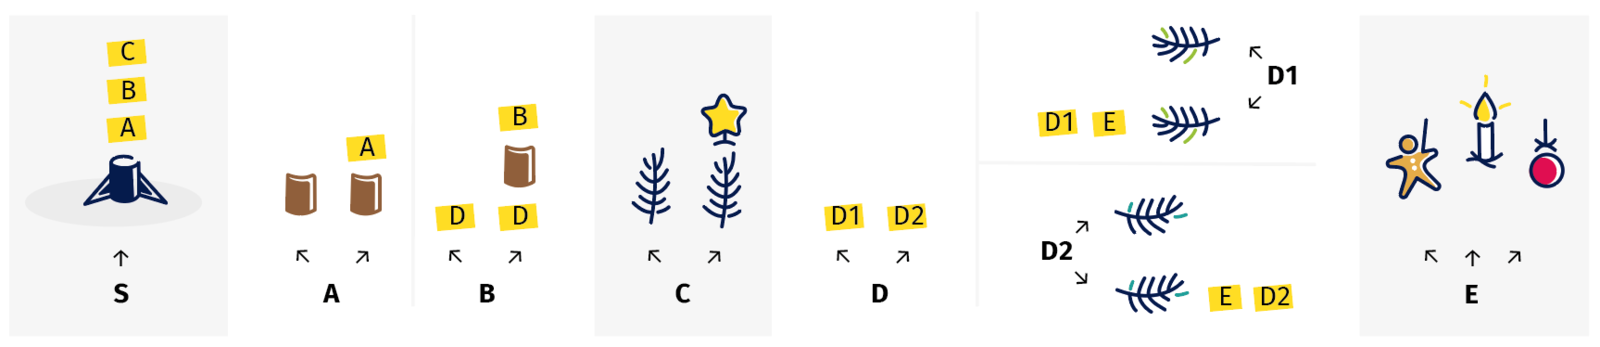 Die Seite enthält vier Versionen eines Weihnachtsbaums, die aus verschiedenen einzelnen Komponenten bestehen. Es gilt, herauszufinden, welcher von ihnen allen Regeln folgt.  Die Regeln sind wie folgt: Ständer:  Auf den Ständer (S) folgen der Reihe nach die Schritte A, B und C.  Stamm:  Schritt A erlaubt ein oder mehrere Stücke Baumstamm. Schritt B führt immer zu Schritt D, kann aber danach ein Stück Baumstamm enthalten und dann wieder von vorne beginnen.  Baumspitze: Schritt C erlaubt entweder eine Spitze mit einem Stern oder eine Spitze ohne.  Zweige: Schritt D führt entweder zu D1 oder zu D2. Schritt D1 erlaubt entweder einen Zweig nach links oder einen Zweig nach links und darauffolgend Schritt E und Schritt D1. Schritt D2 erlaubt entweder einen Zweig nach rechts oder einen Zweig nach rechts und darauffolgend Schritt E und Schritt D2.  Schmuck: Schritt E erlaubt entweder eine Lebkuchenfigur, eine Kerze oder eine Weihnachtskugel.